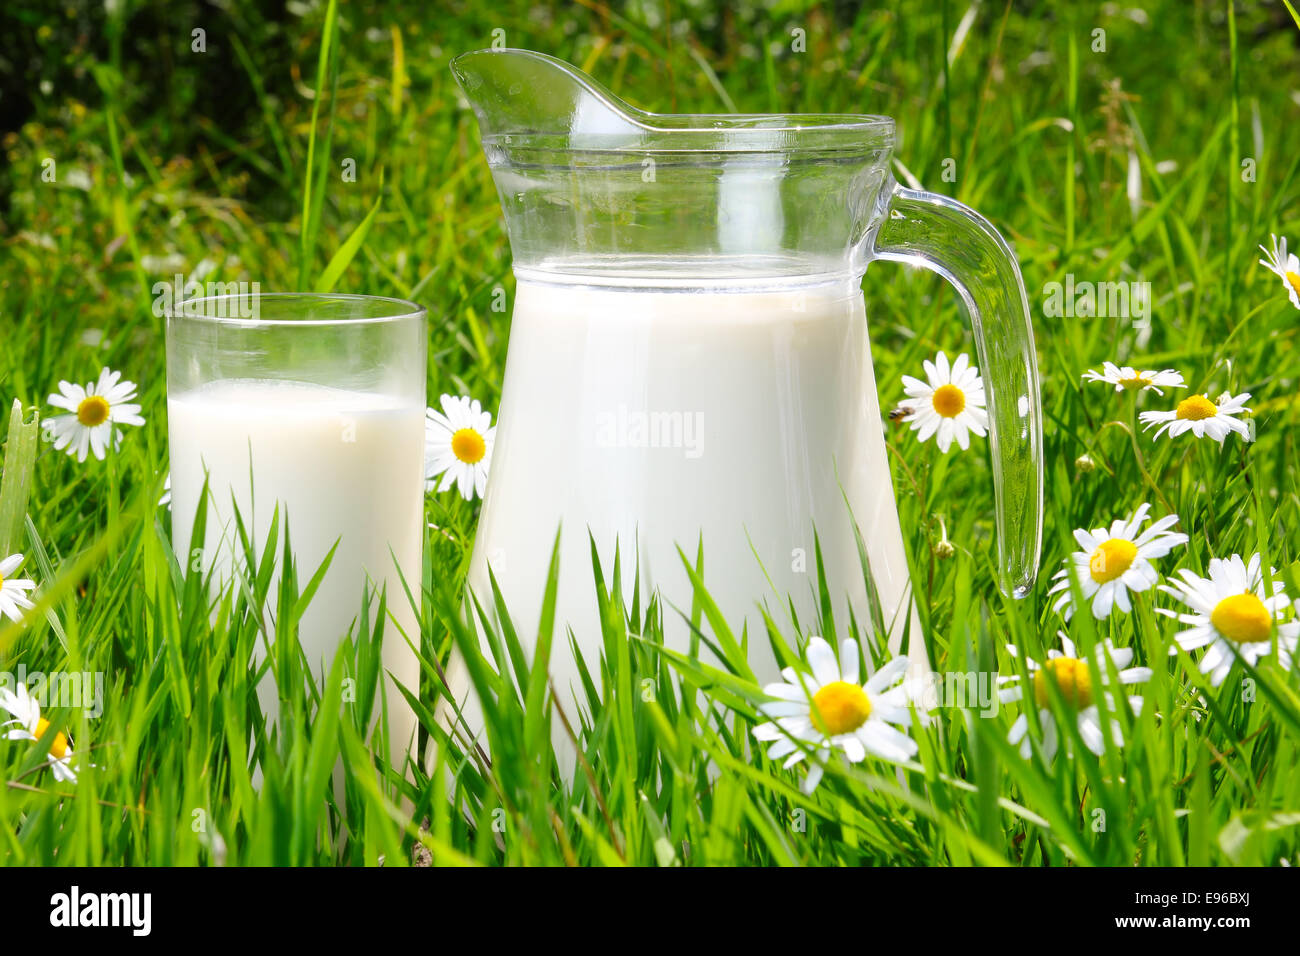 Krug und Glas Milch über grünen Rasen Stockfoto